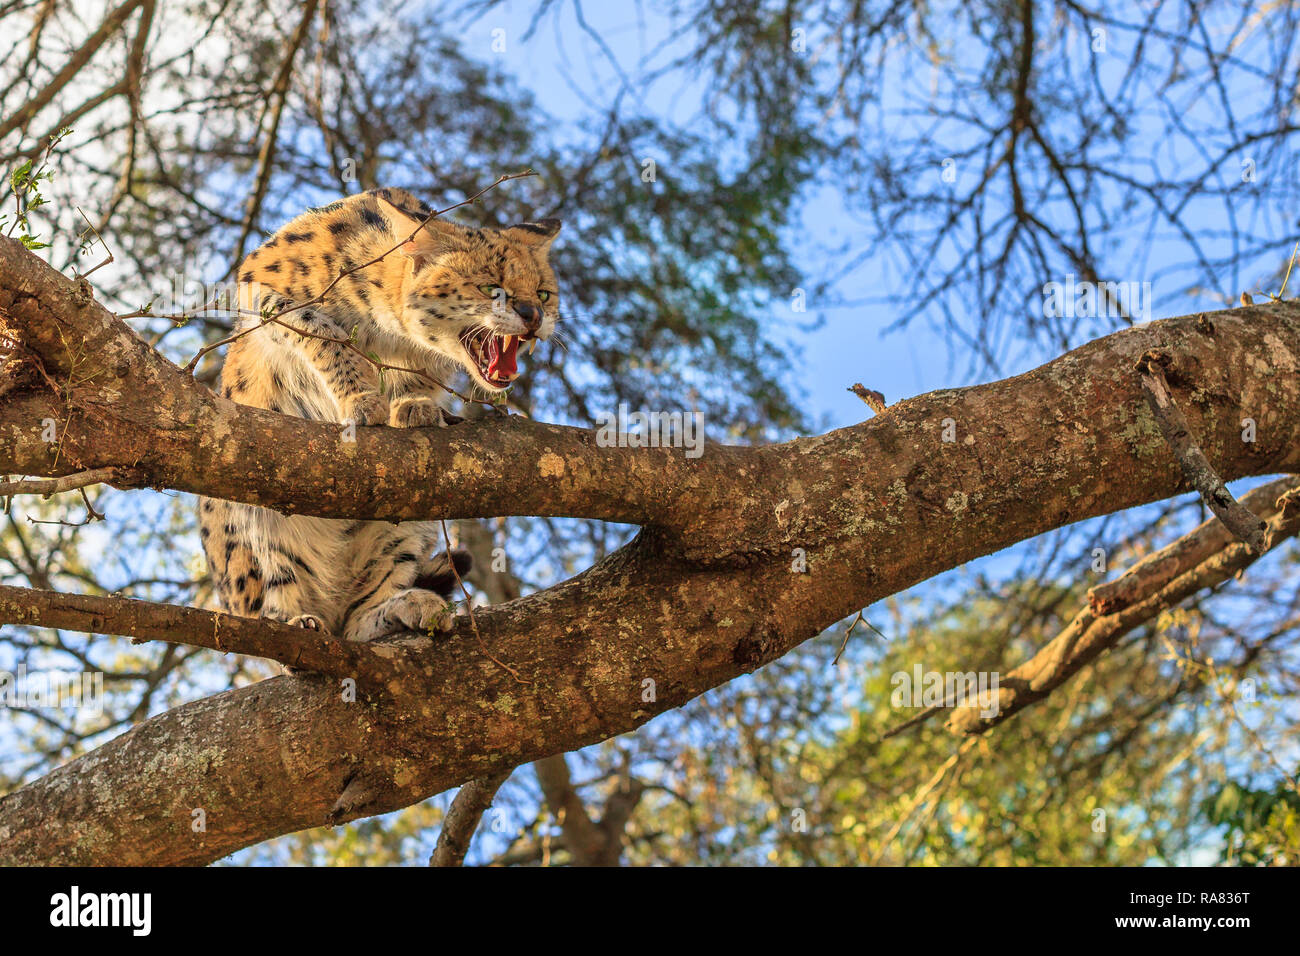 Un Serval (Leptailurus serval nom scientifique, avec sa bouche grande ouverte sur un arbre dans la nature. Le Serval est un chouette chat sauvage originaire d'Afrique. Banque D'Images